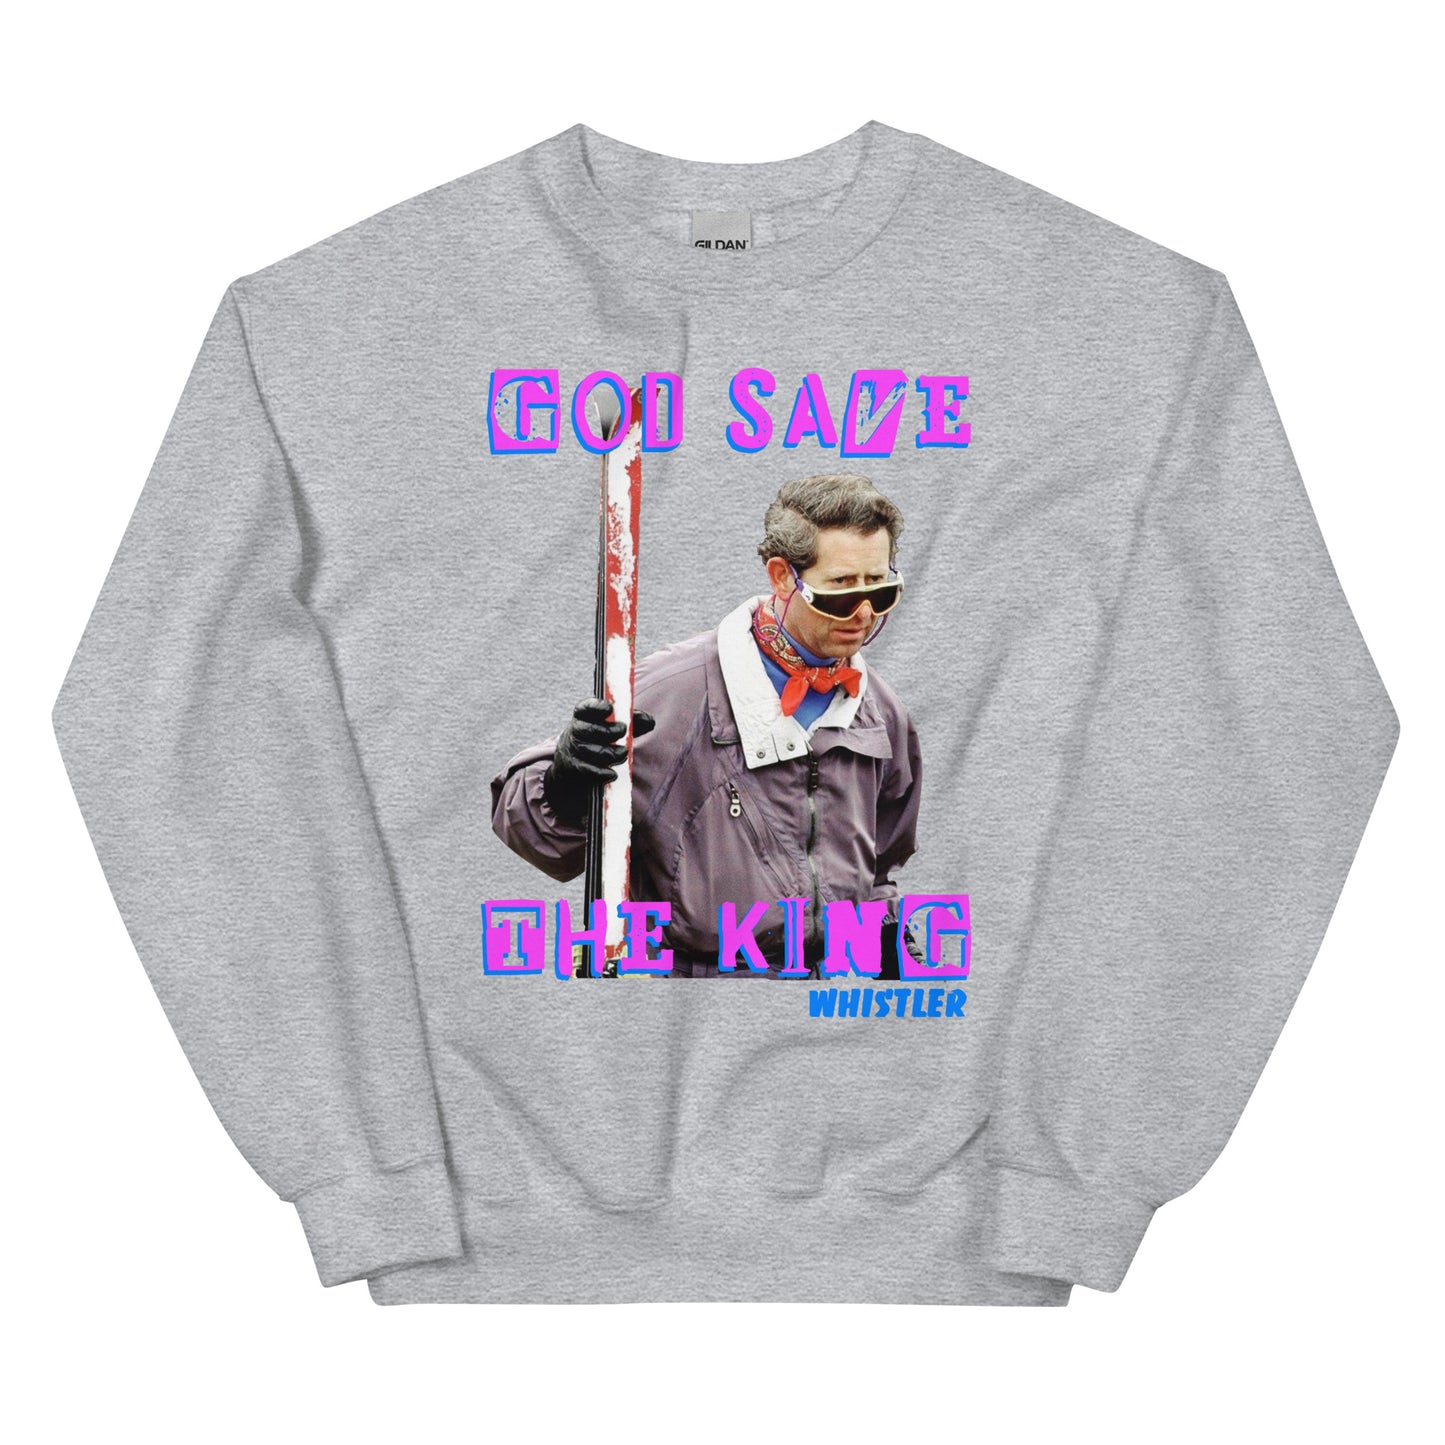 God save the king skiing whistler screen printed crewneck sweatshirt